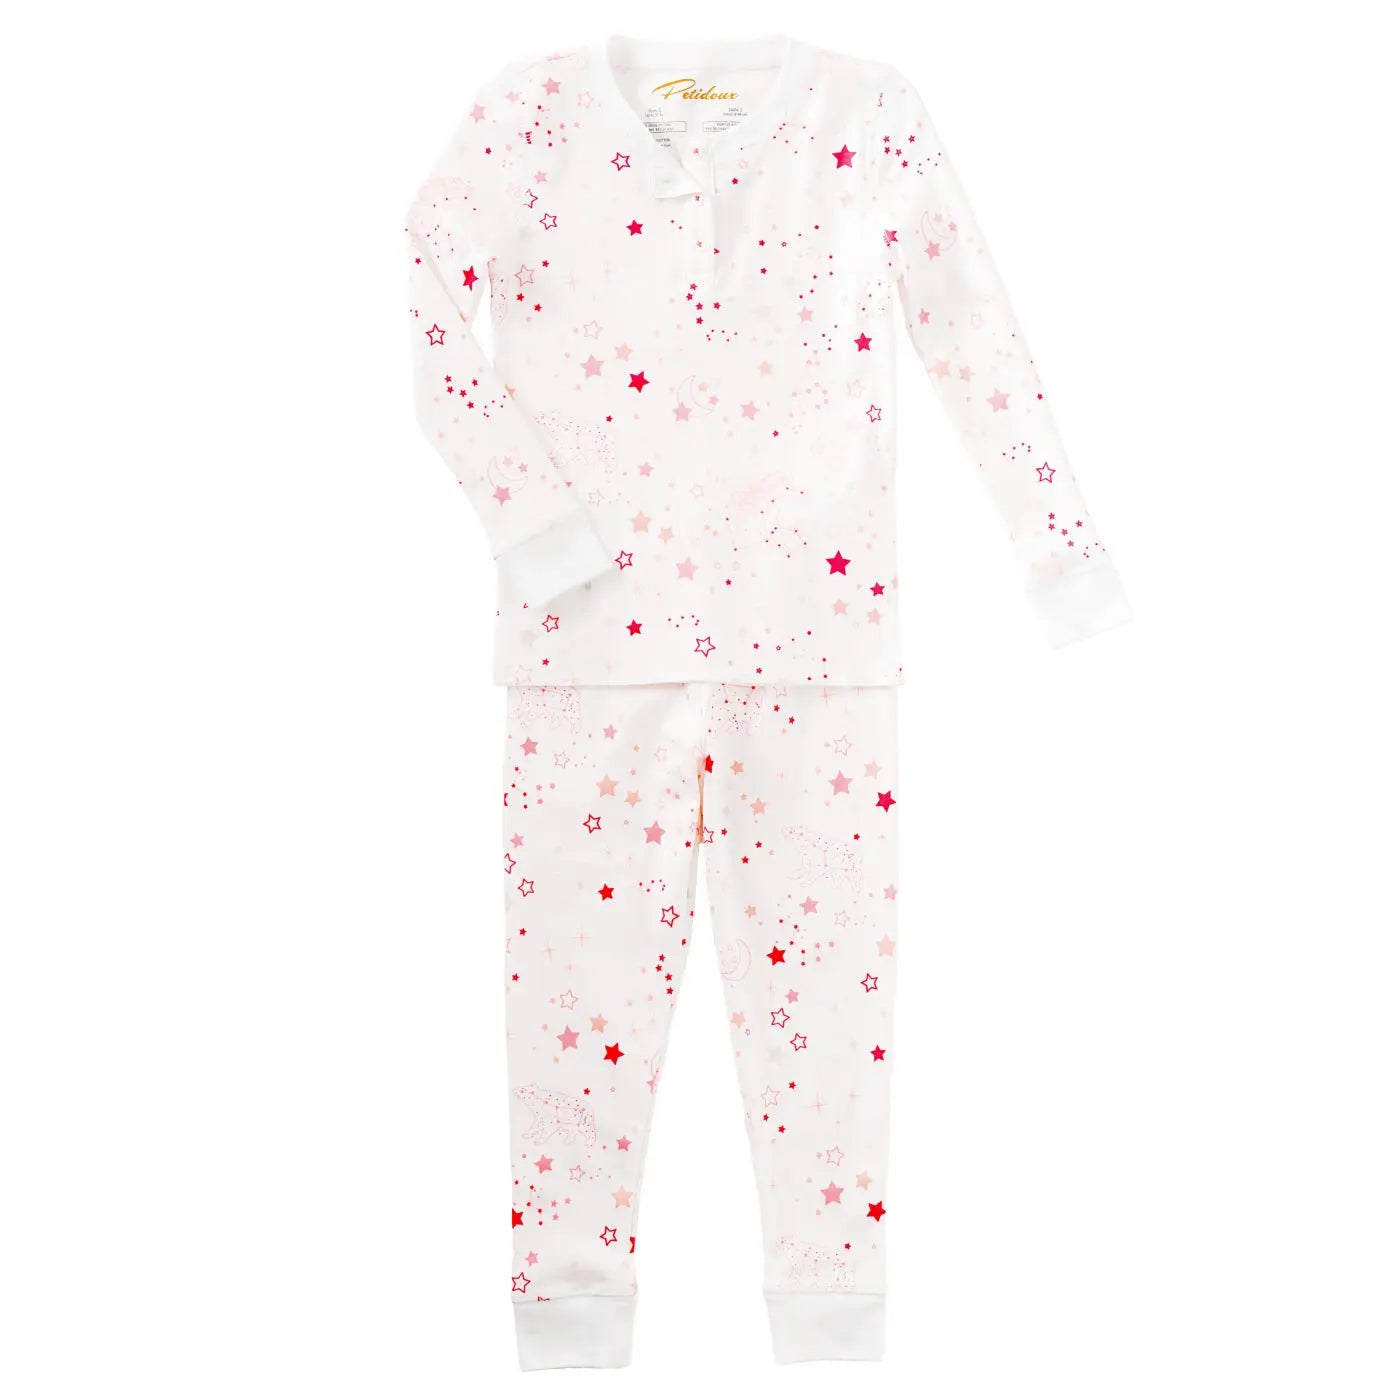 Pyjamas set twinkle twinkle pink-Layette-Petidoux-Blue Almonds-London-South Kensington